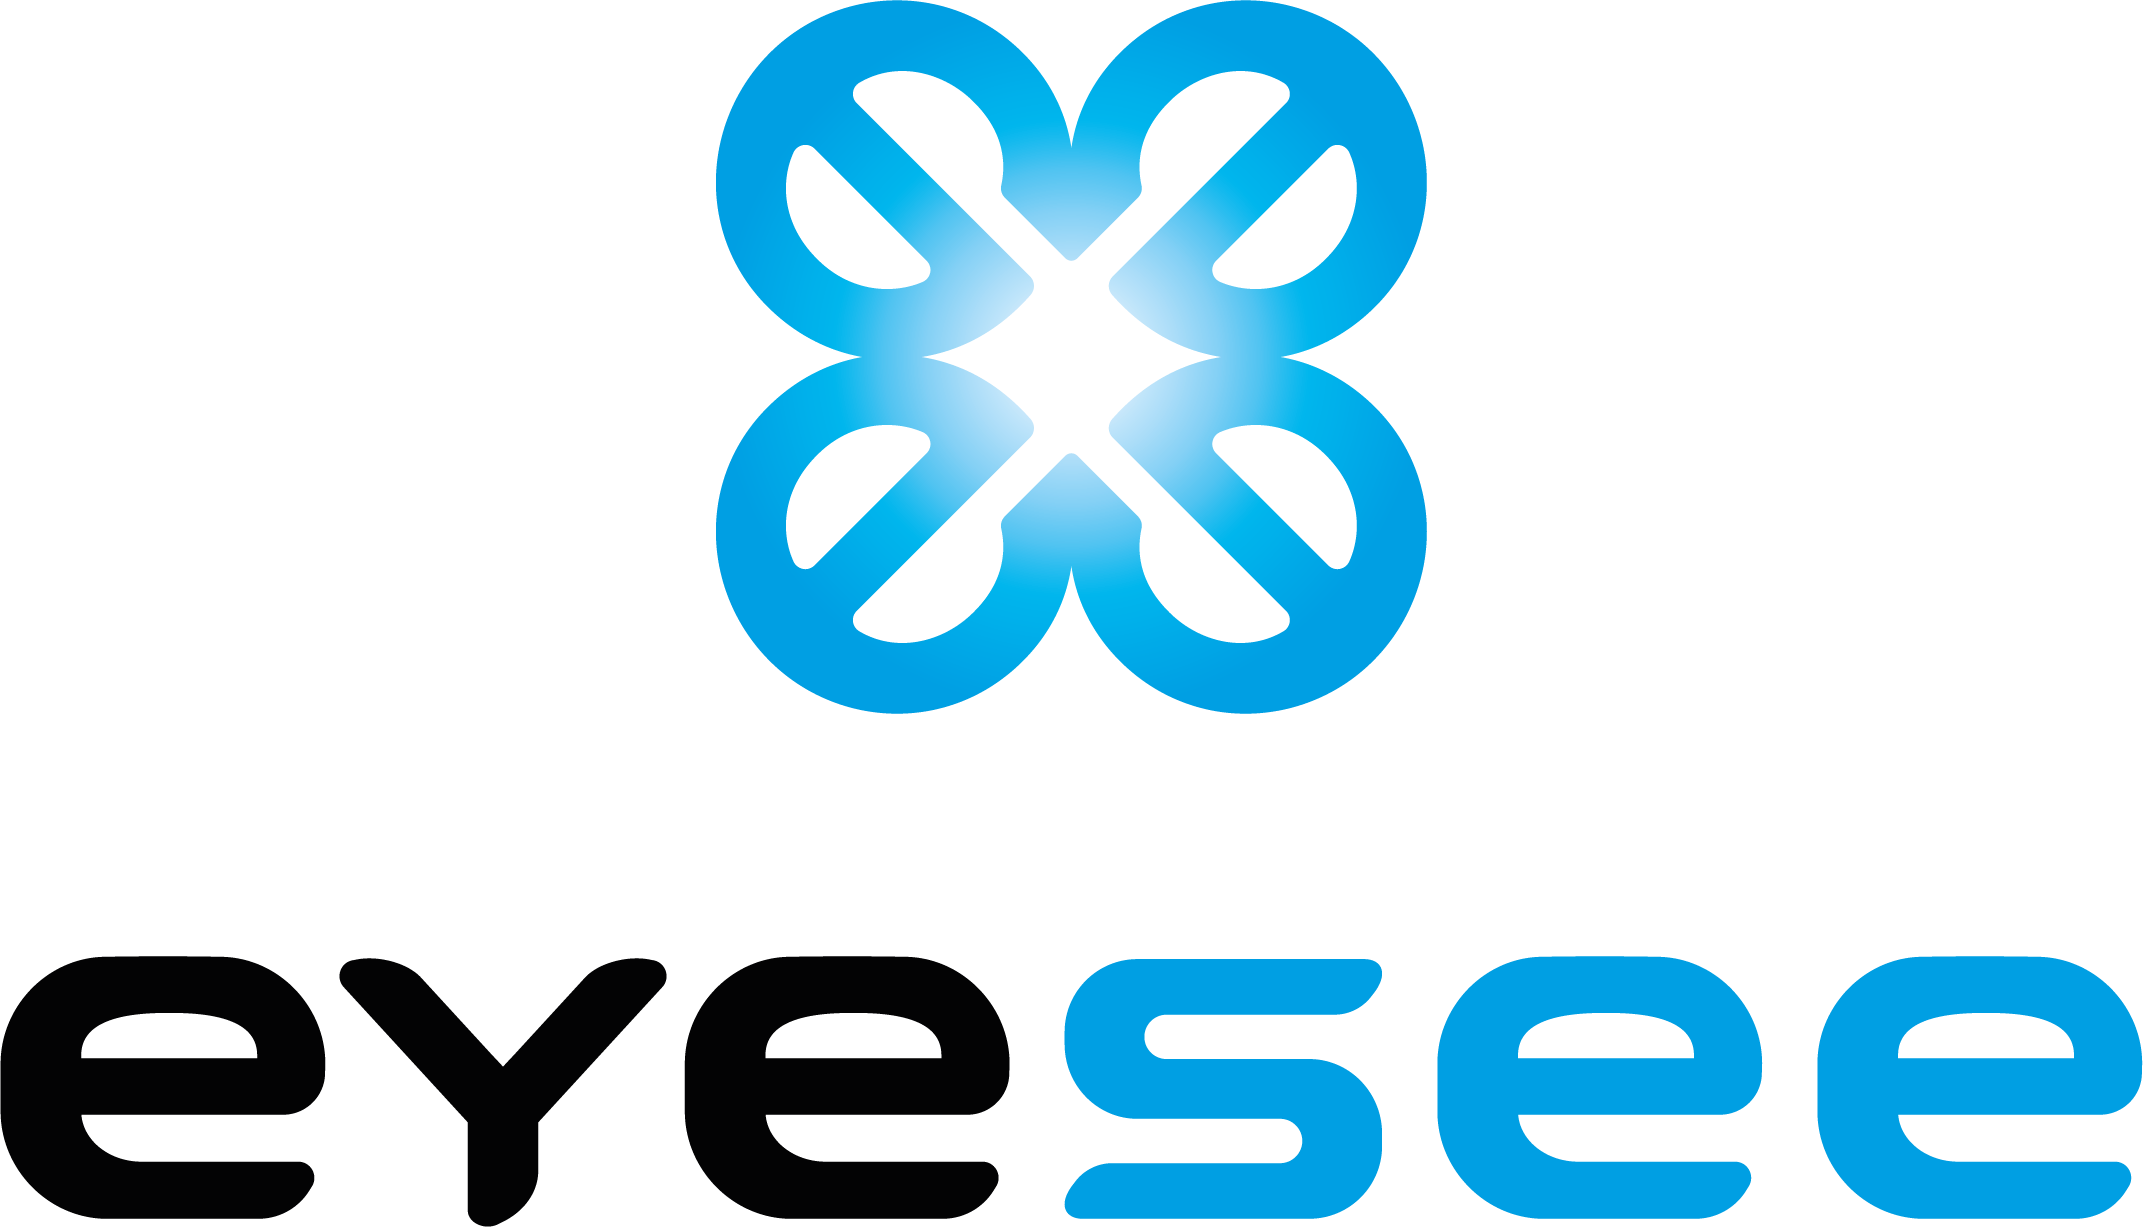 Eyesee logo 4